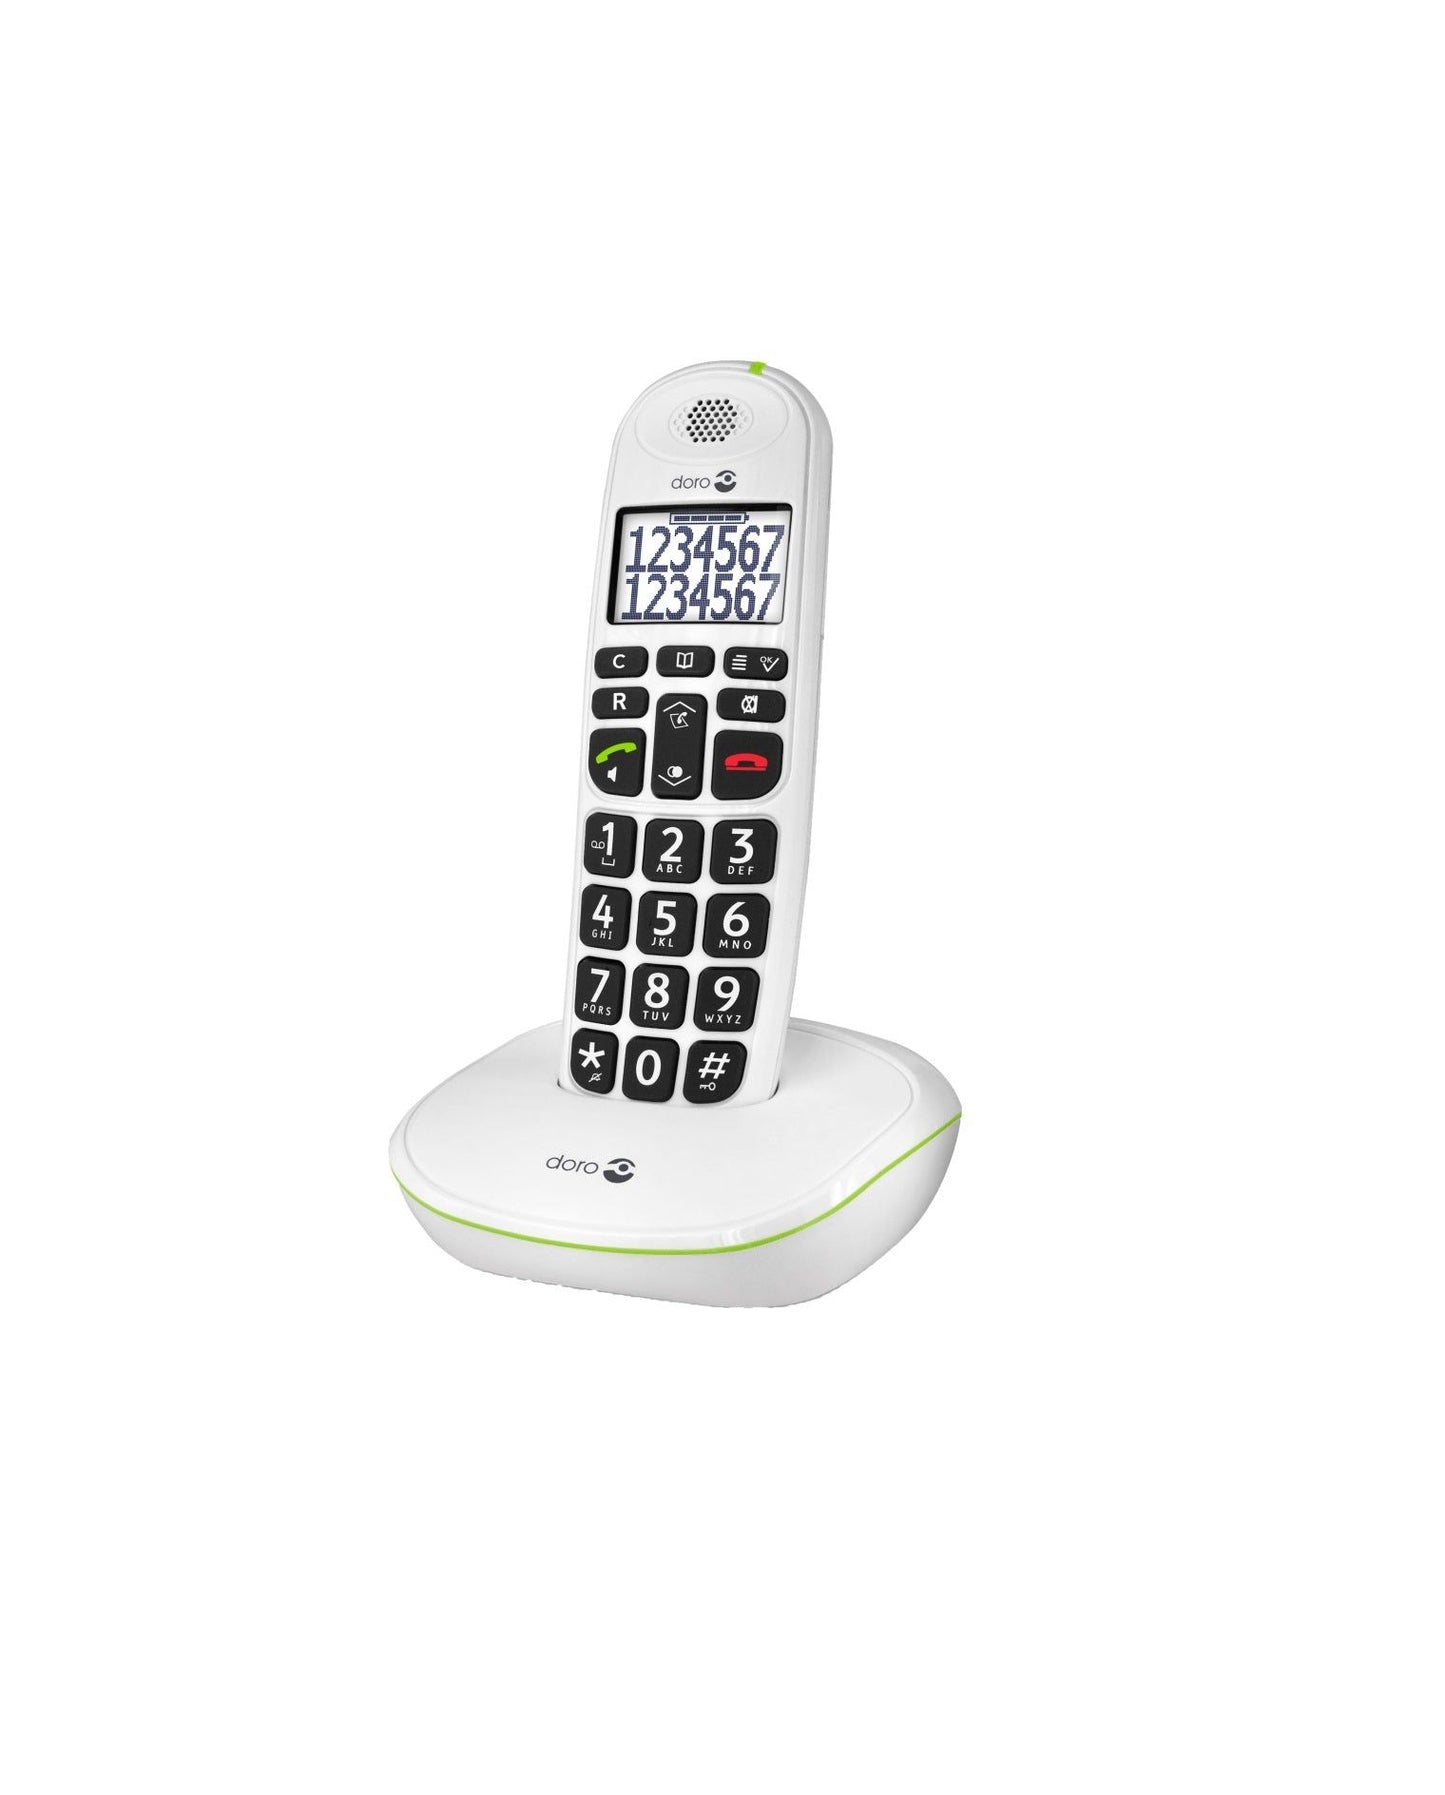 Doro PhoneEasy® 110 Draadloze Seniorentelefoon met Sprekende Cijfertoetsen DECT Kopen van  Doro?- Vanaf €68.95 bij Pucshop.nl